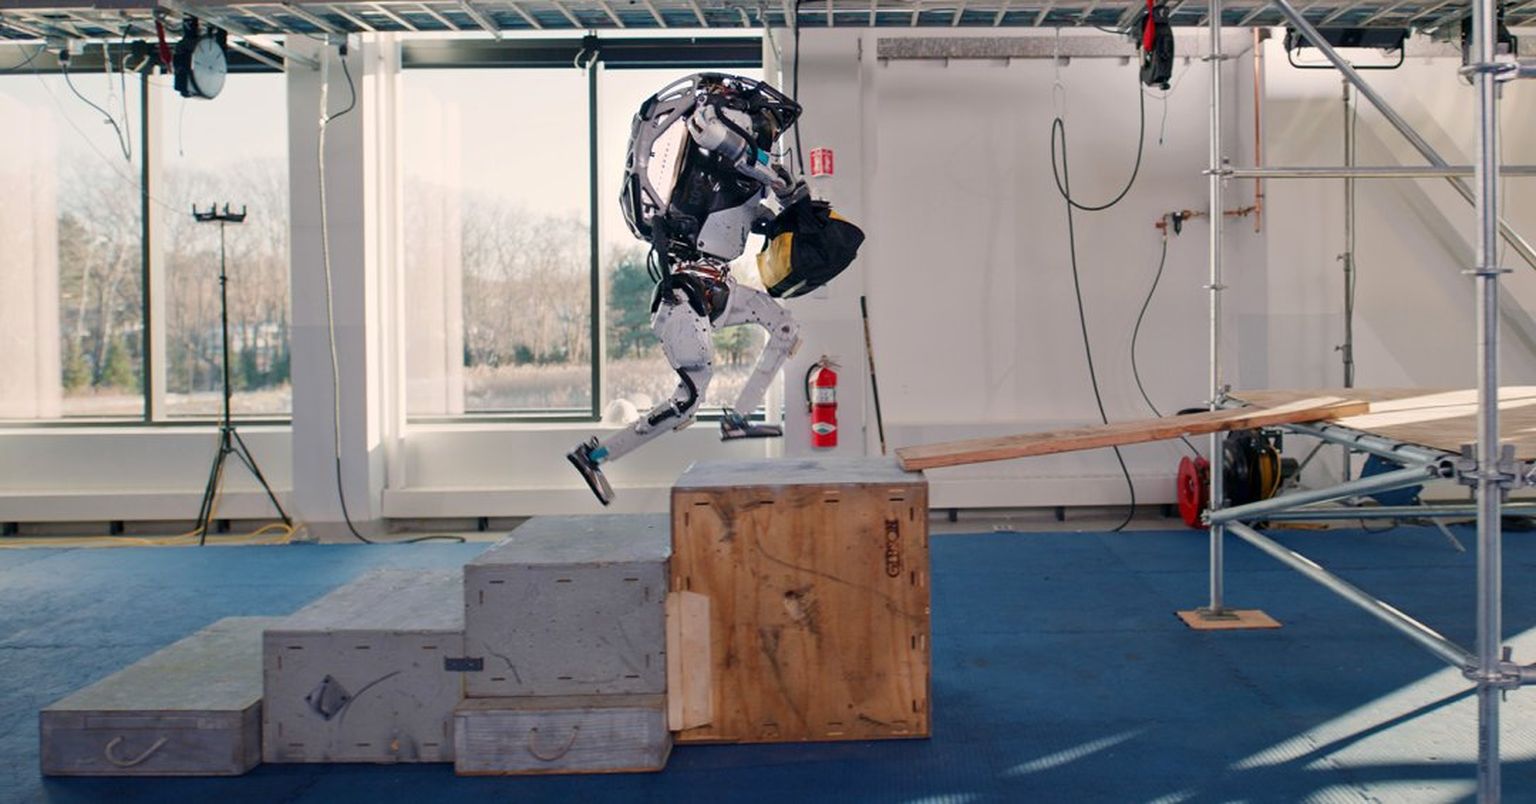 Humanoidrobot teeb trikke, hüppab, viskab saltot ja jookseb juba osavamalt, kui nii mõnigi päris-inimene. Kas selline masin hakkab varsti töökohti ära võtma?